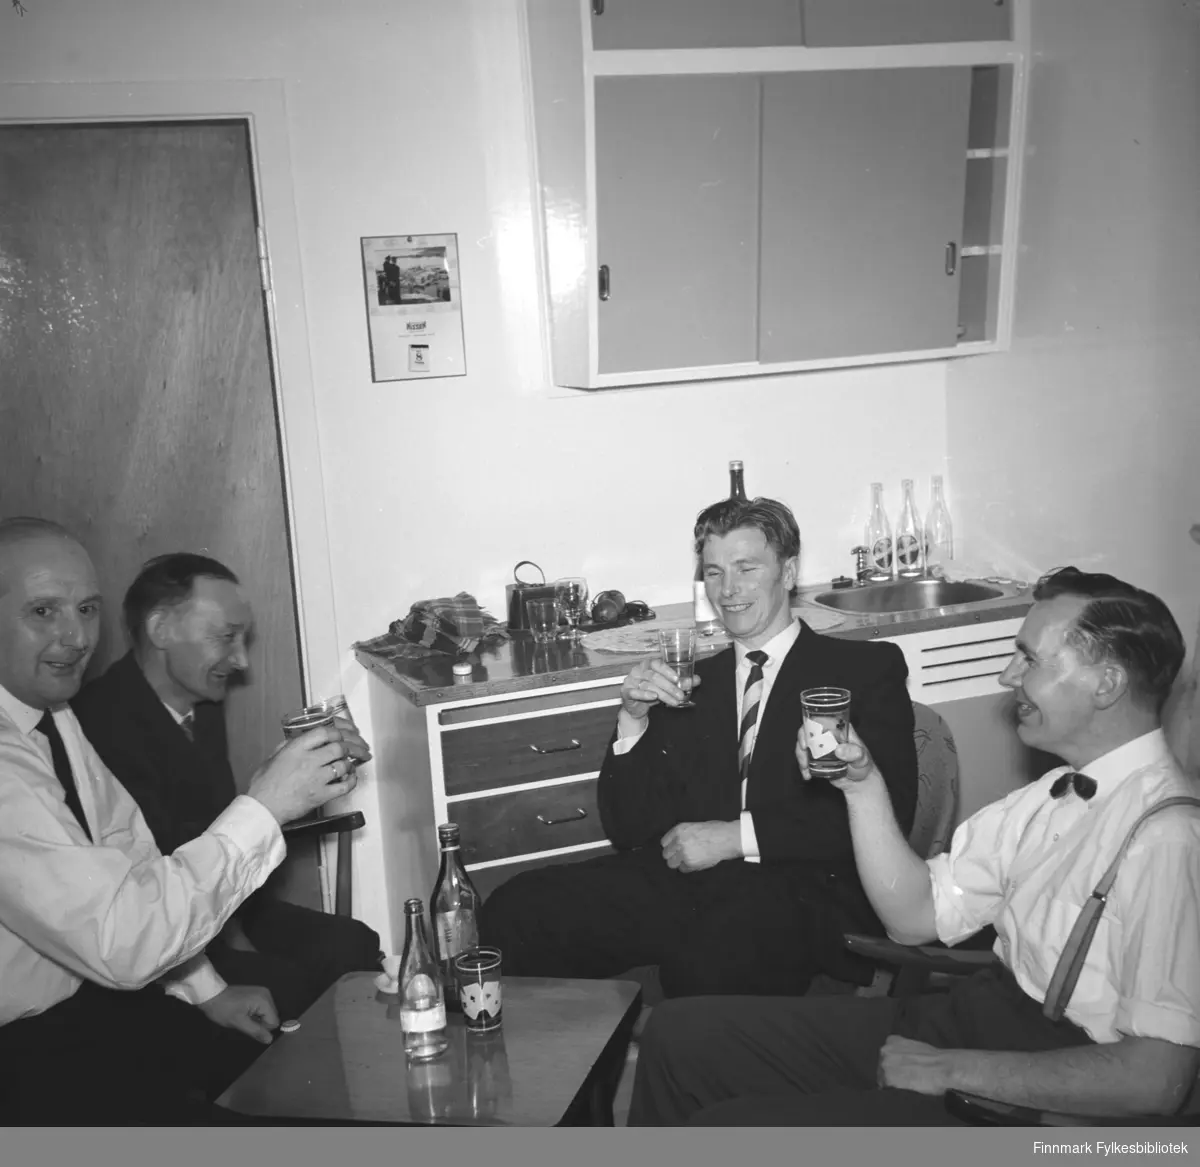 Eino Drannem fotografert i kjøkkenet sammen med sine kompiser. Alle sitter rundt et litet bord og har et glass i hånden og smiler